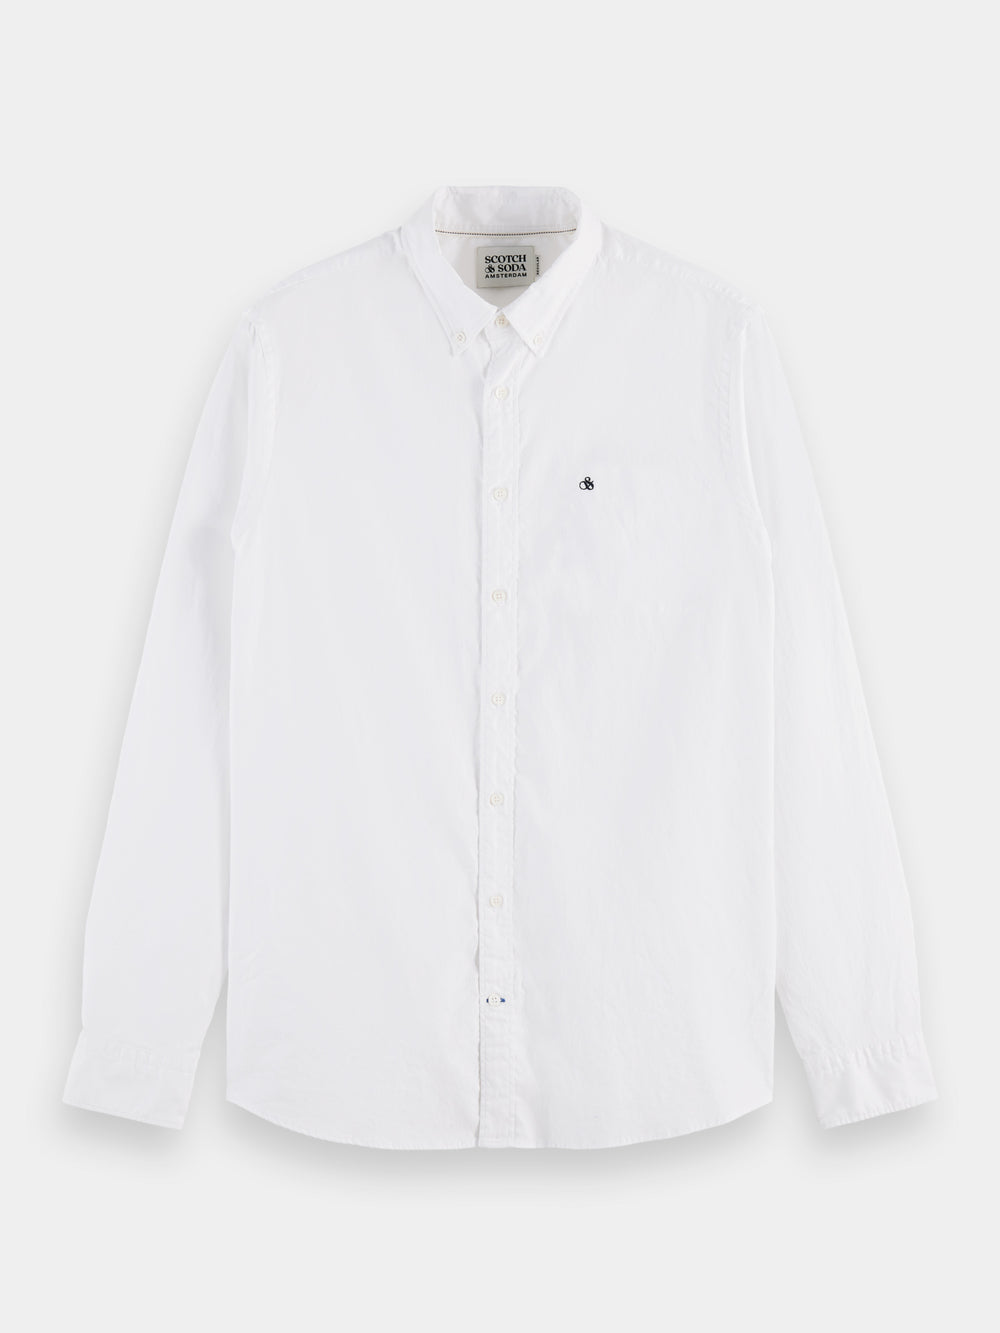 Organic cotton/elastane oxford shirt - Scotch & Soda AU